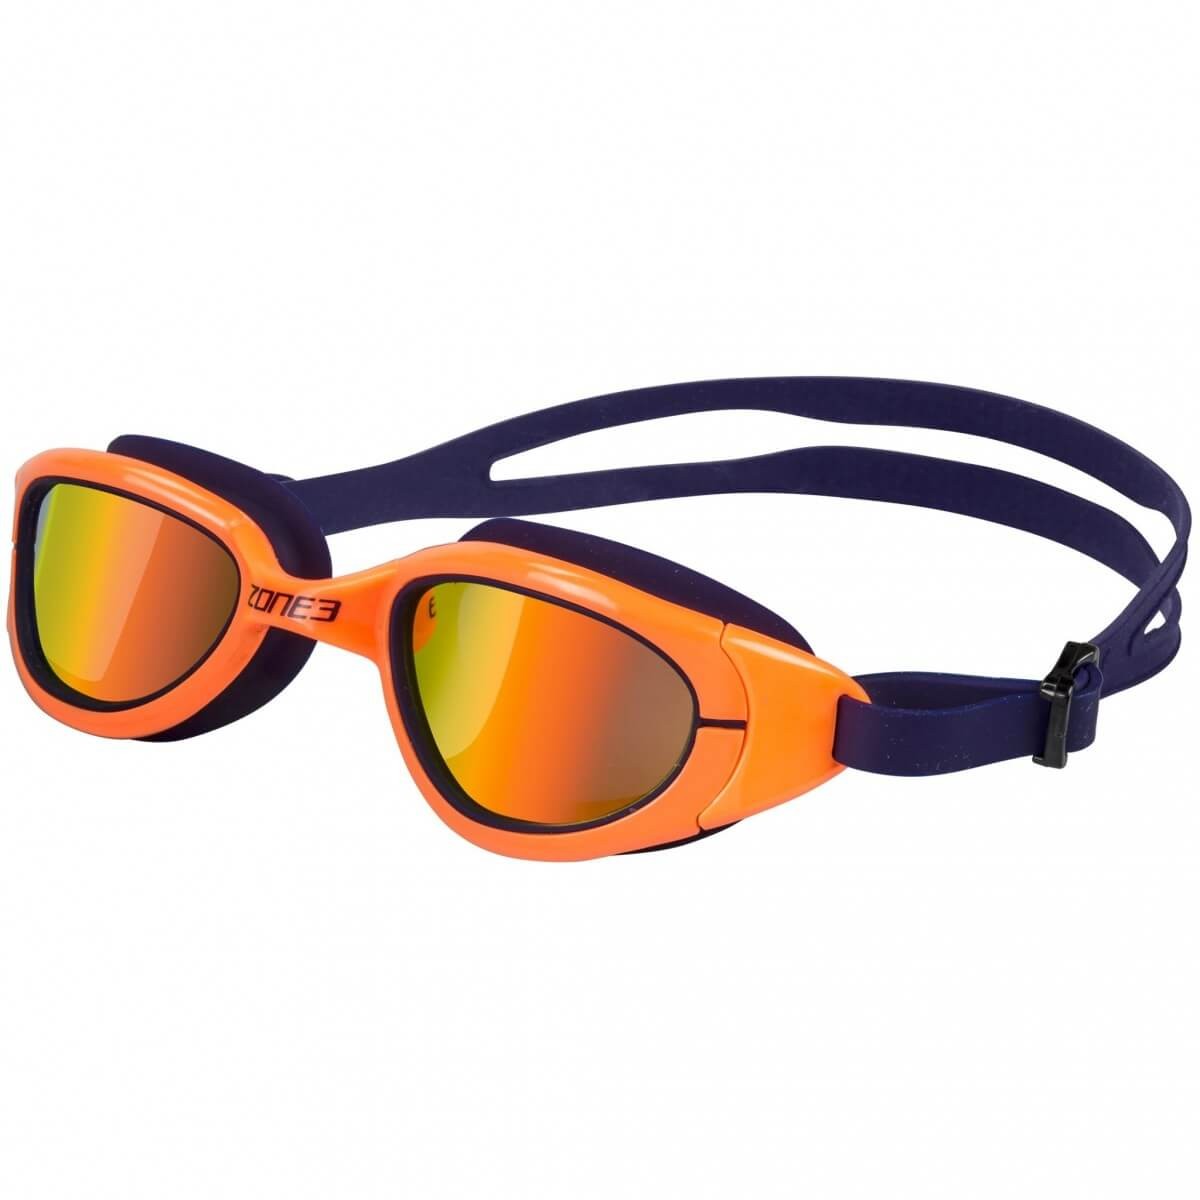 Gafas de natación Attack Zone3 Naranja Polarizadas